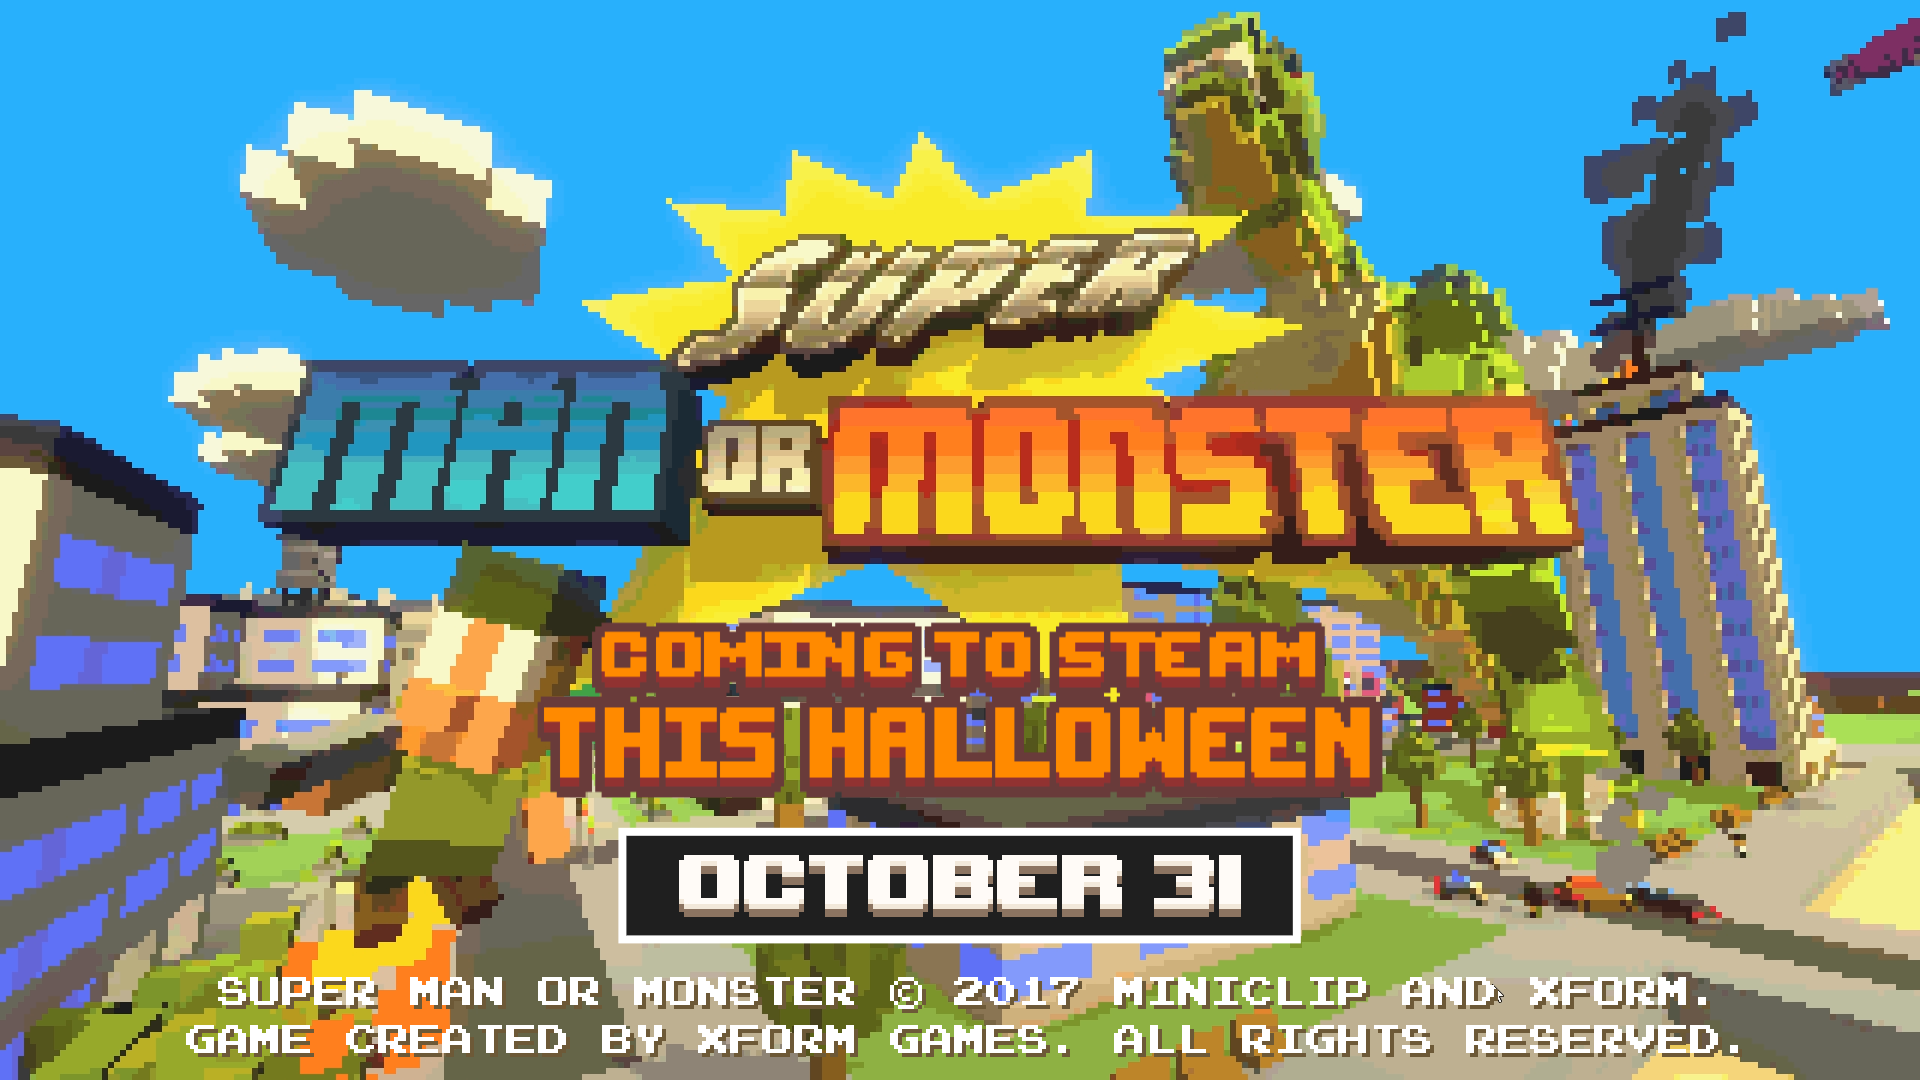 Man or monster. Super man or Monster. Игры похожие на super man or Monster. Super man or Monster Mods.